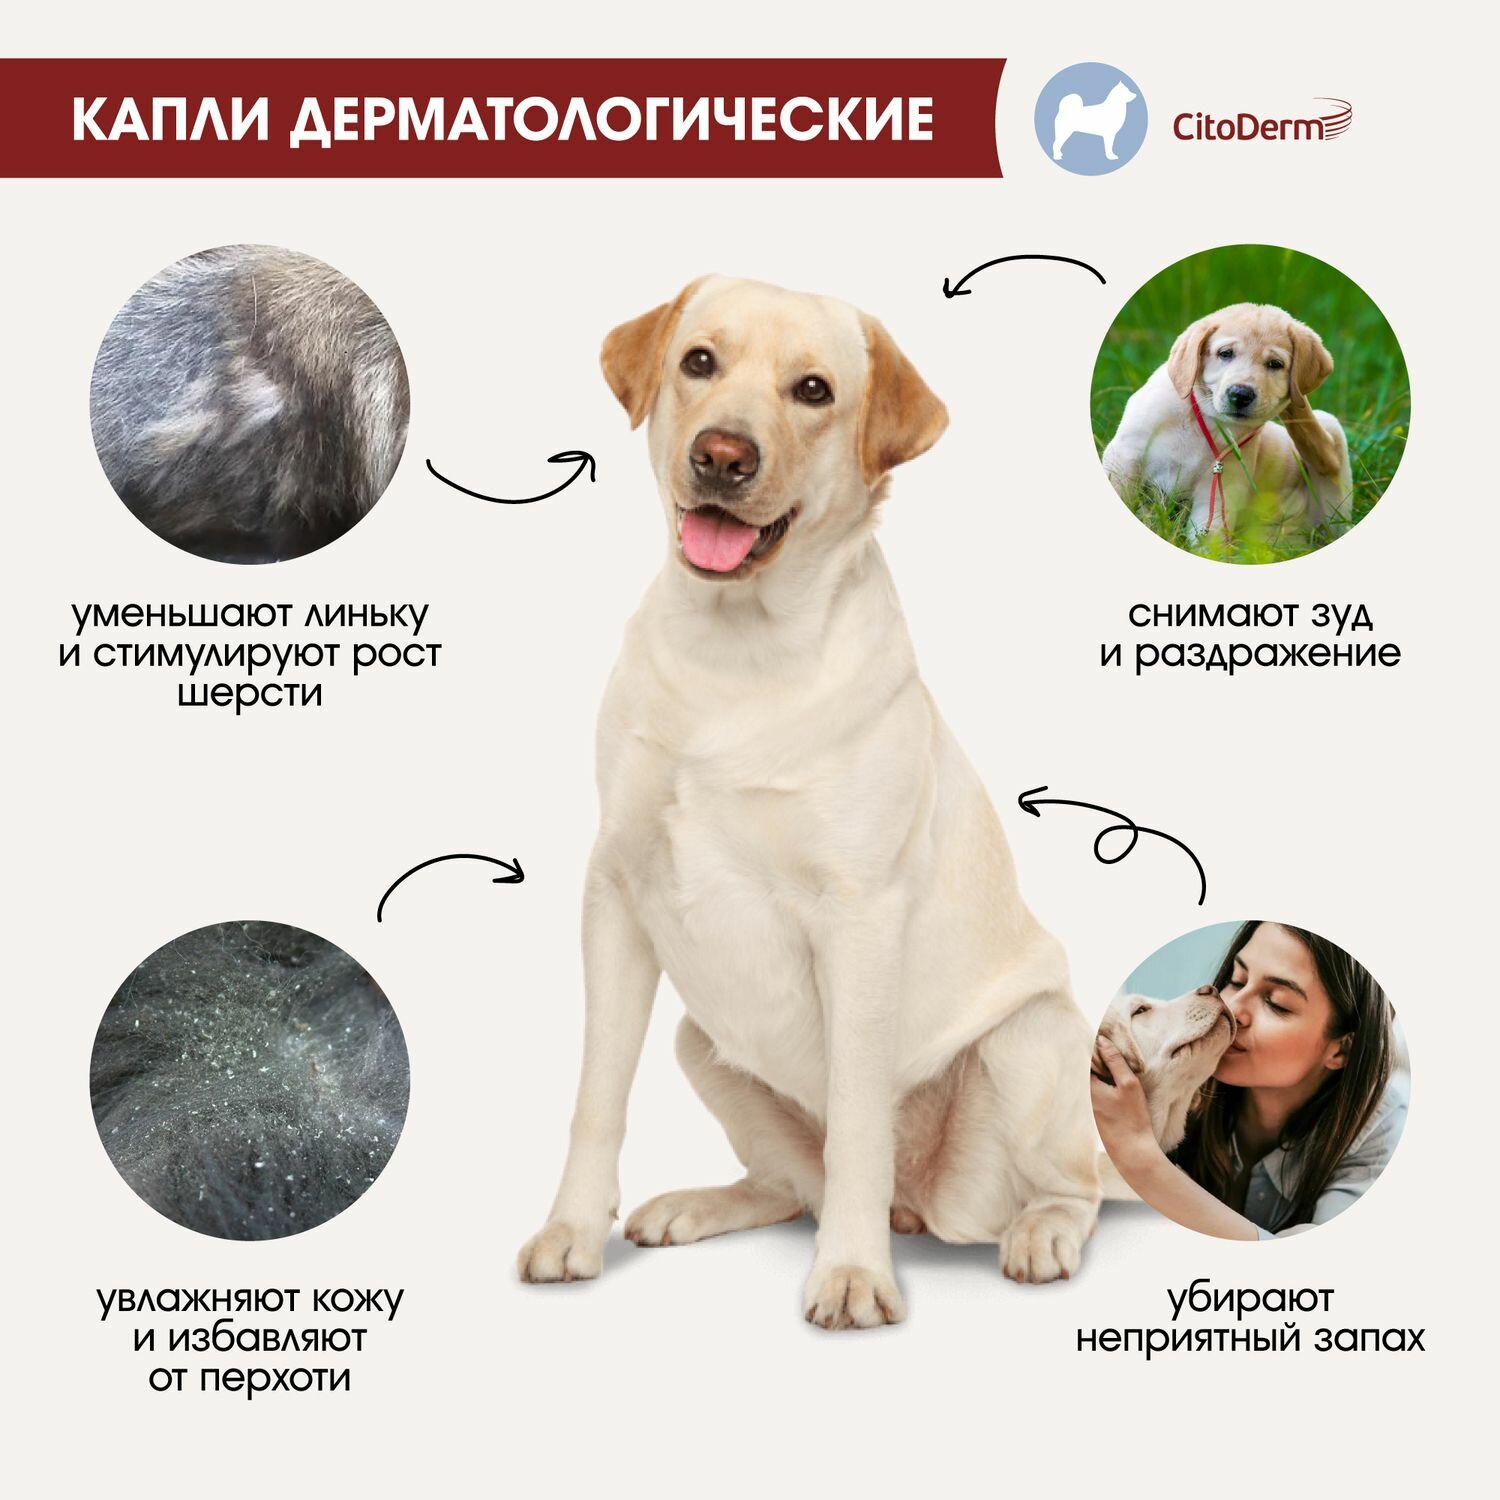 Капли дерматологические CitoDerm для собак 10-30 кг, 4 пипетки по 3мл - фото №8